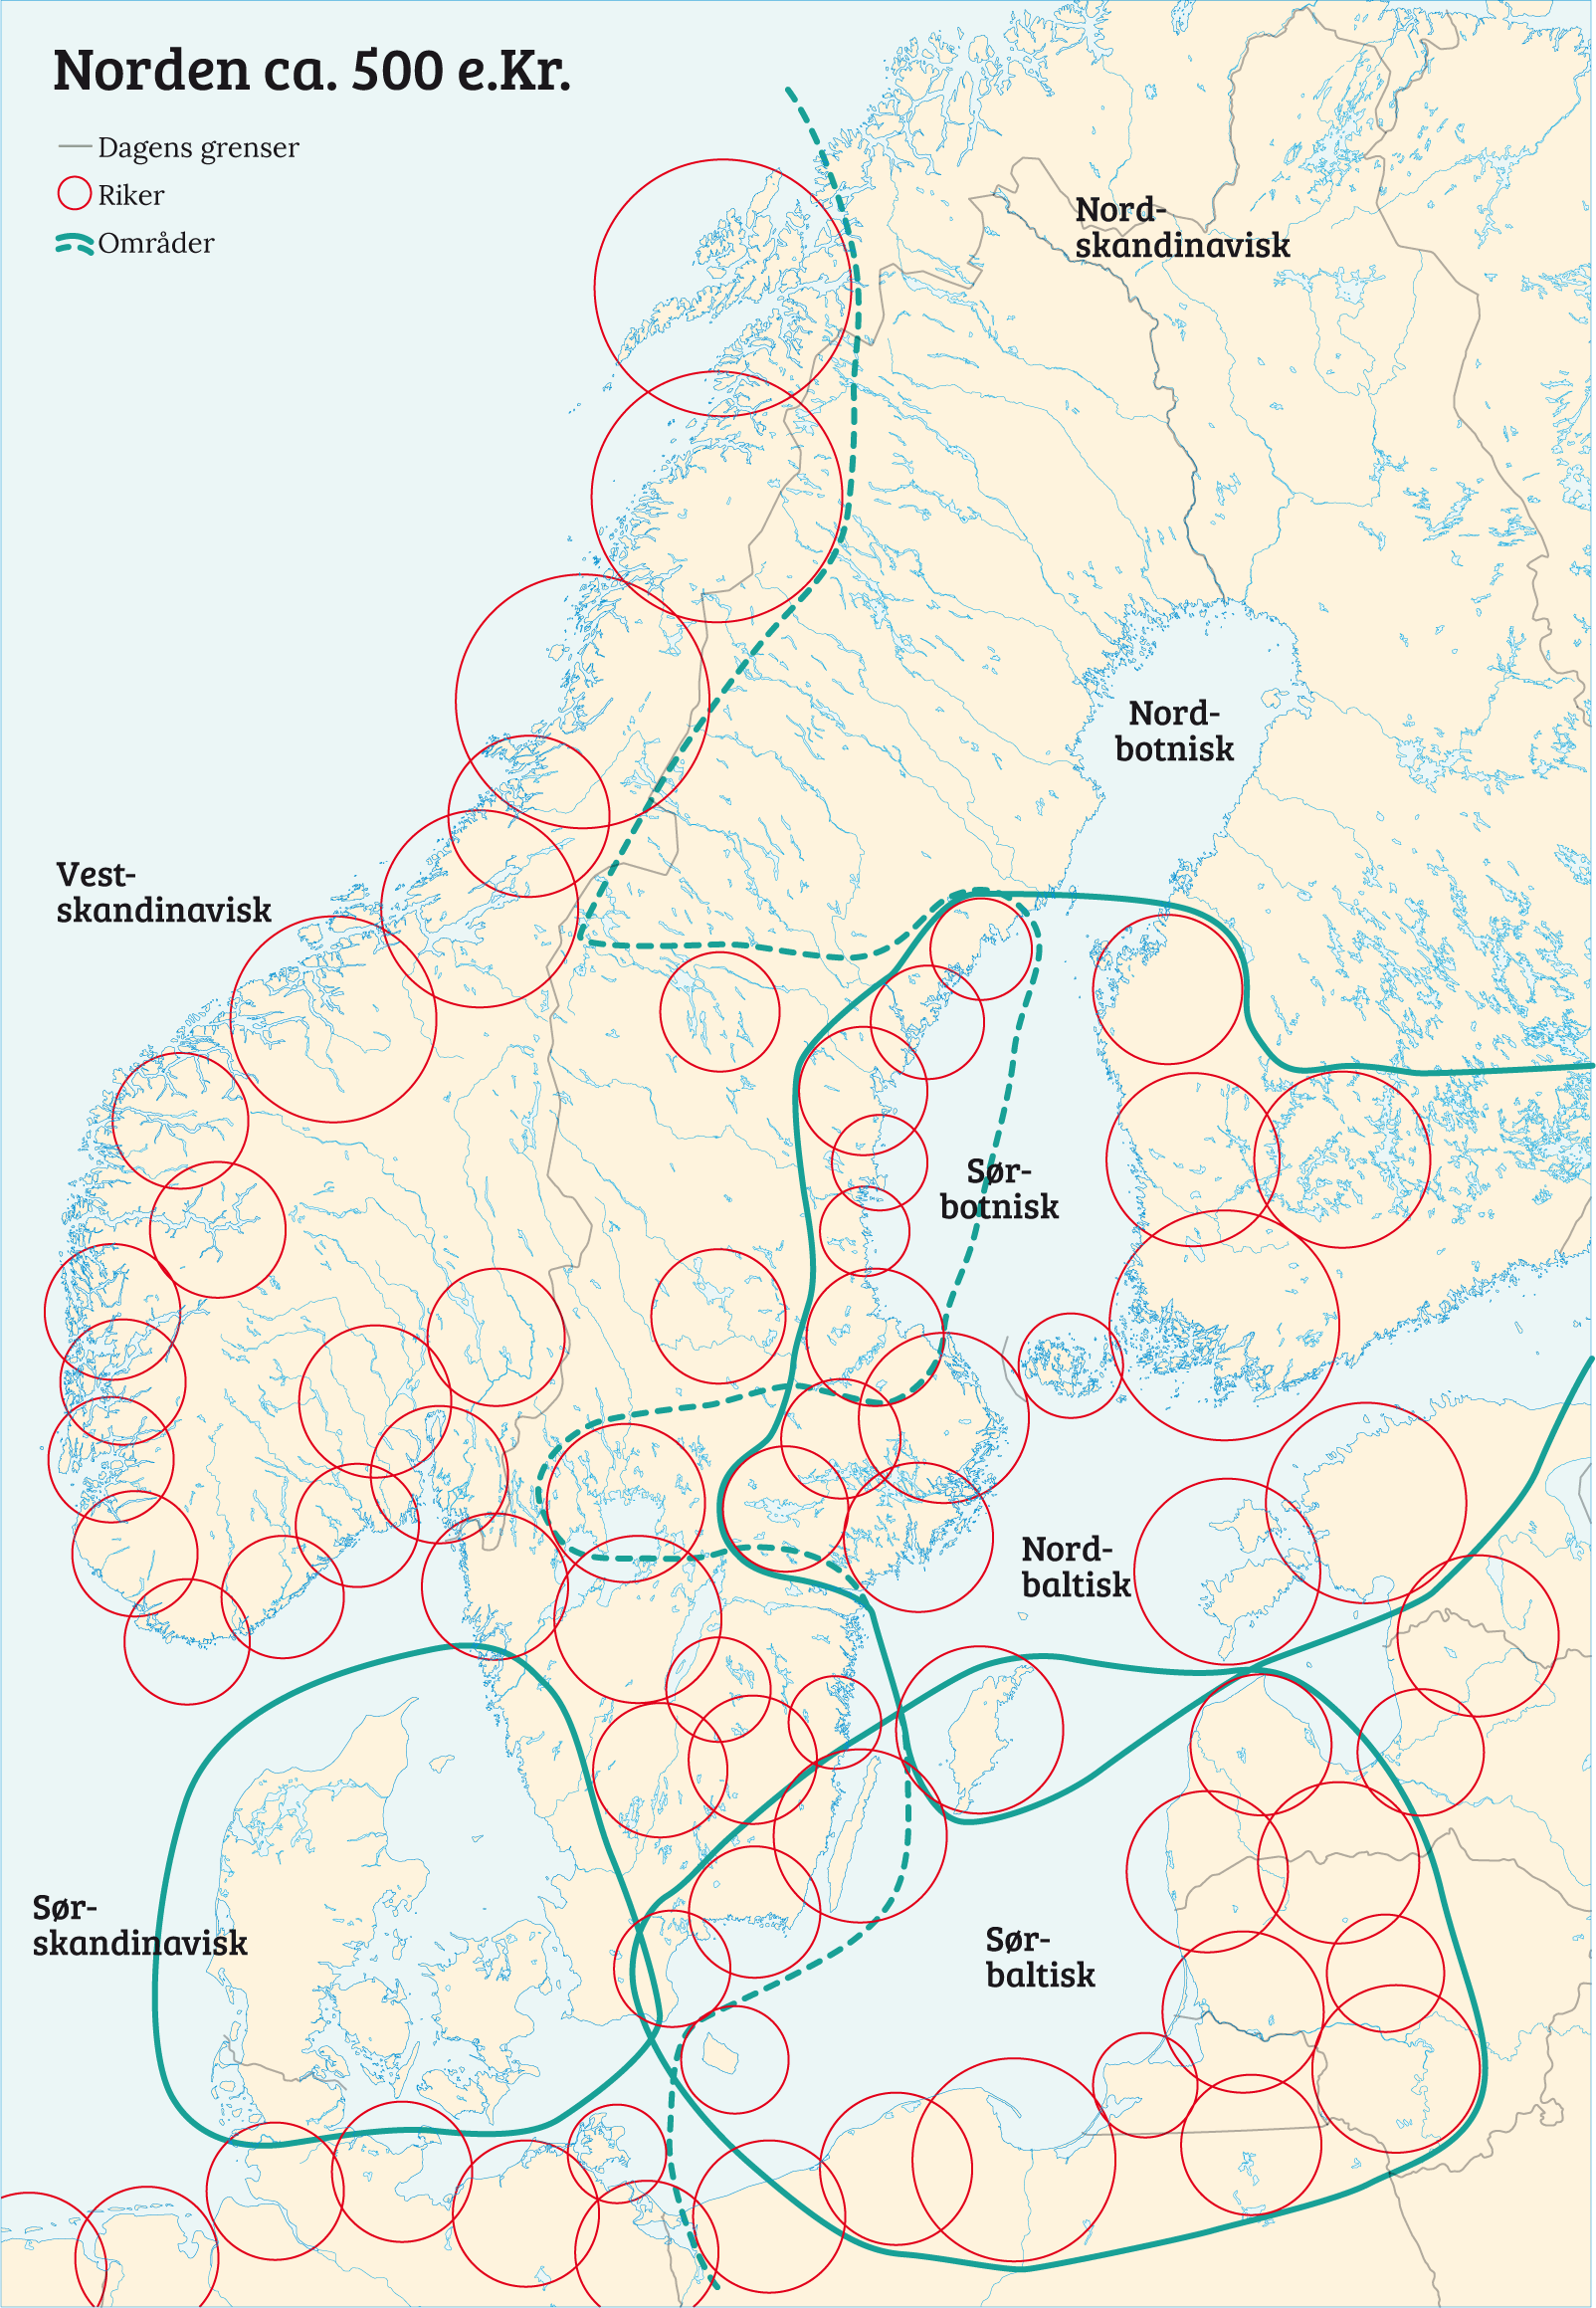 Kart over Norden som viser riker, ca. 500 e.Kr. Rikene er konsentrert rundt kysten, med noen noen mil i diameter hver